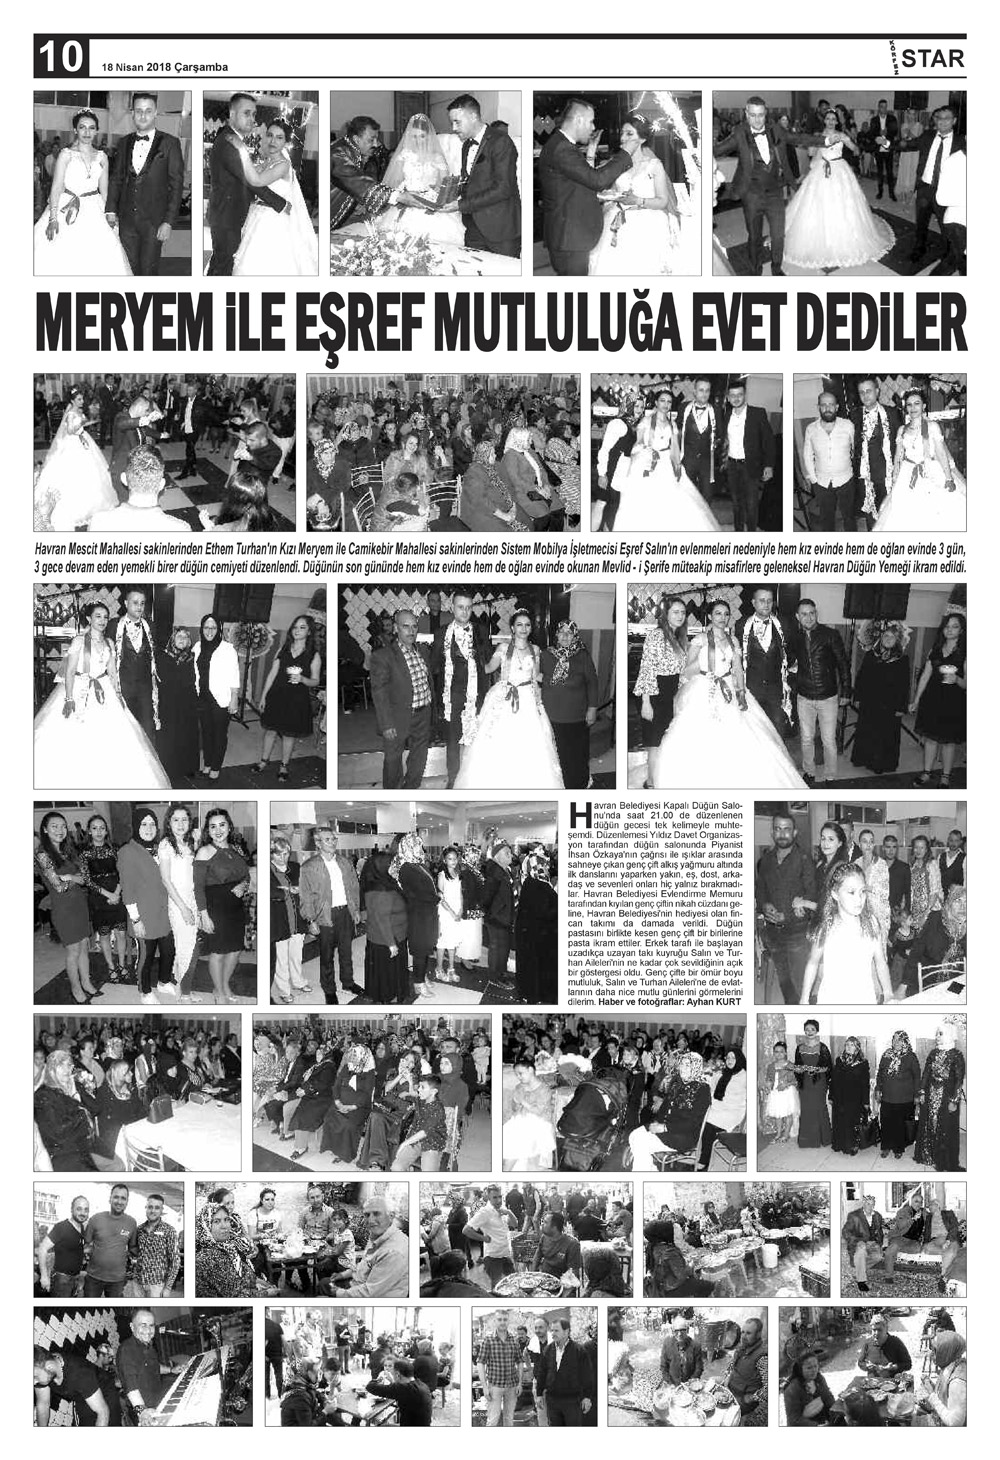 18042018-tarihli-gazetemiz-1618-04-17031024.jpg